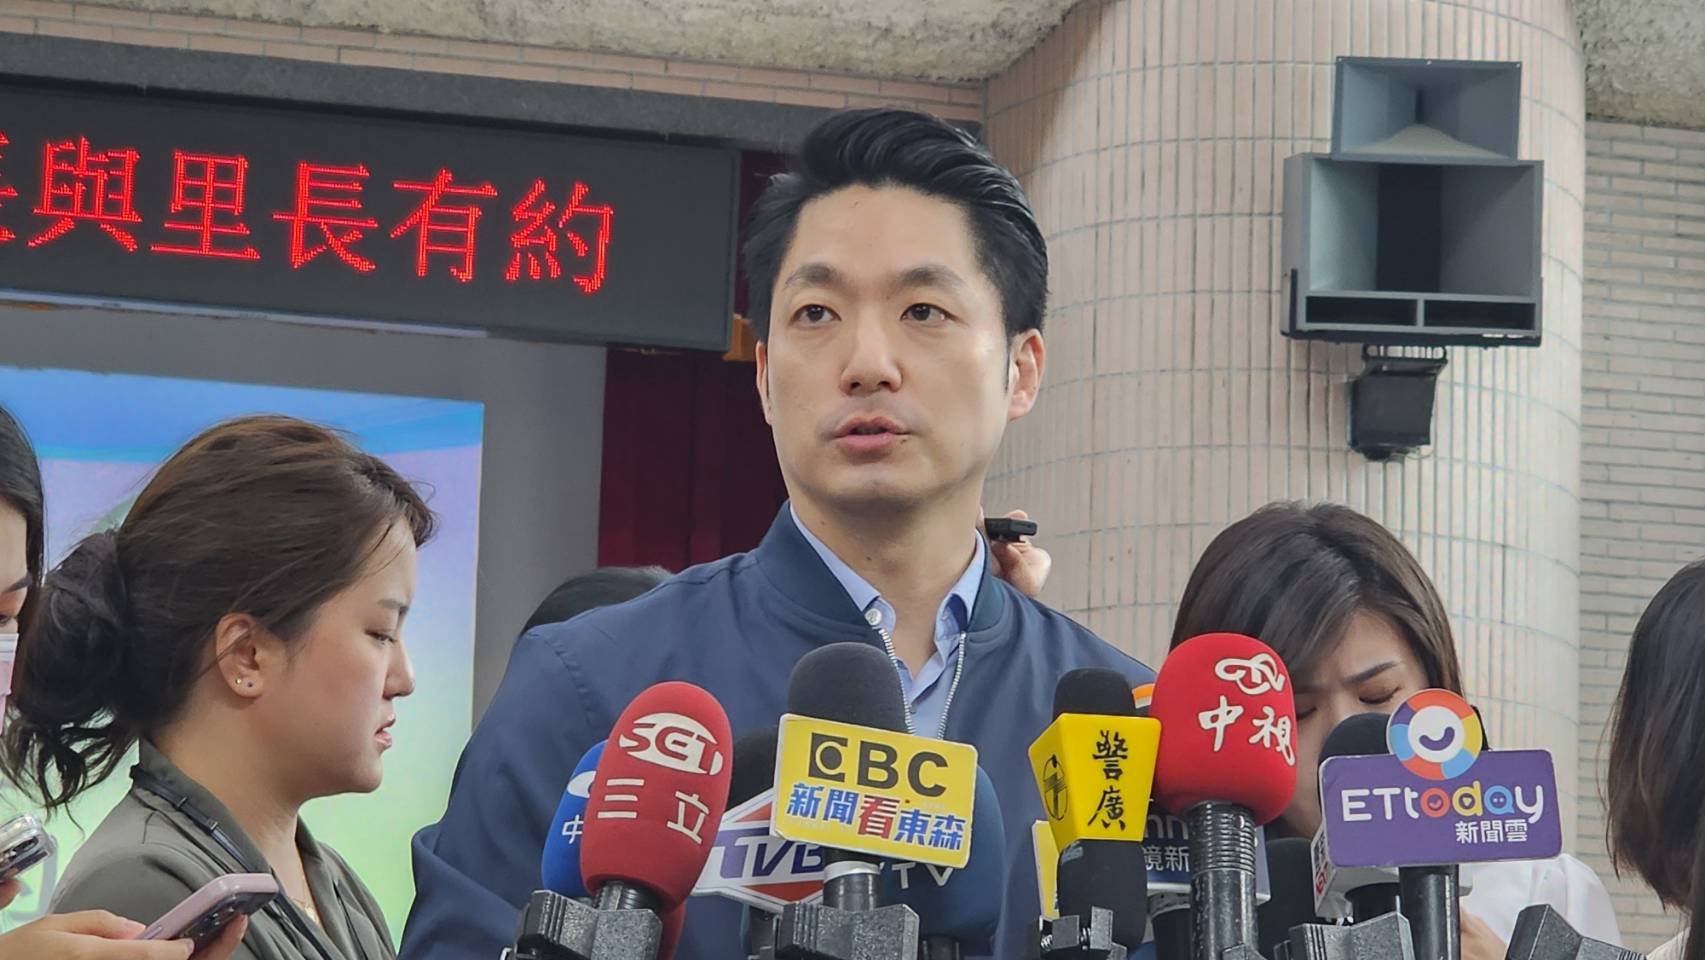 台北市长蒋万安上午参加中正区「市长与里长有约」行程受访。记者杨正海／摄影